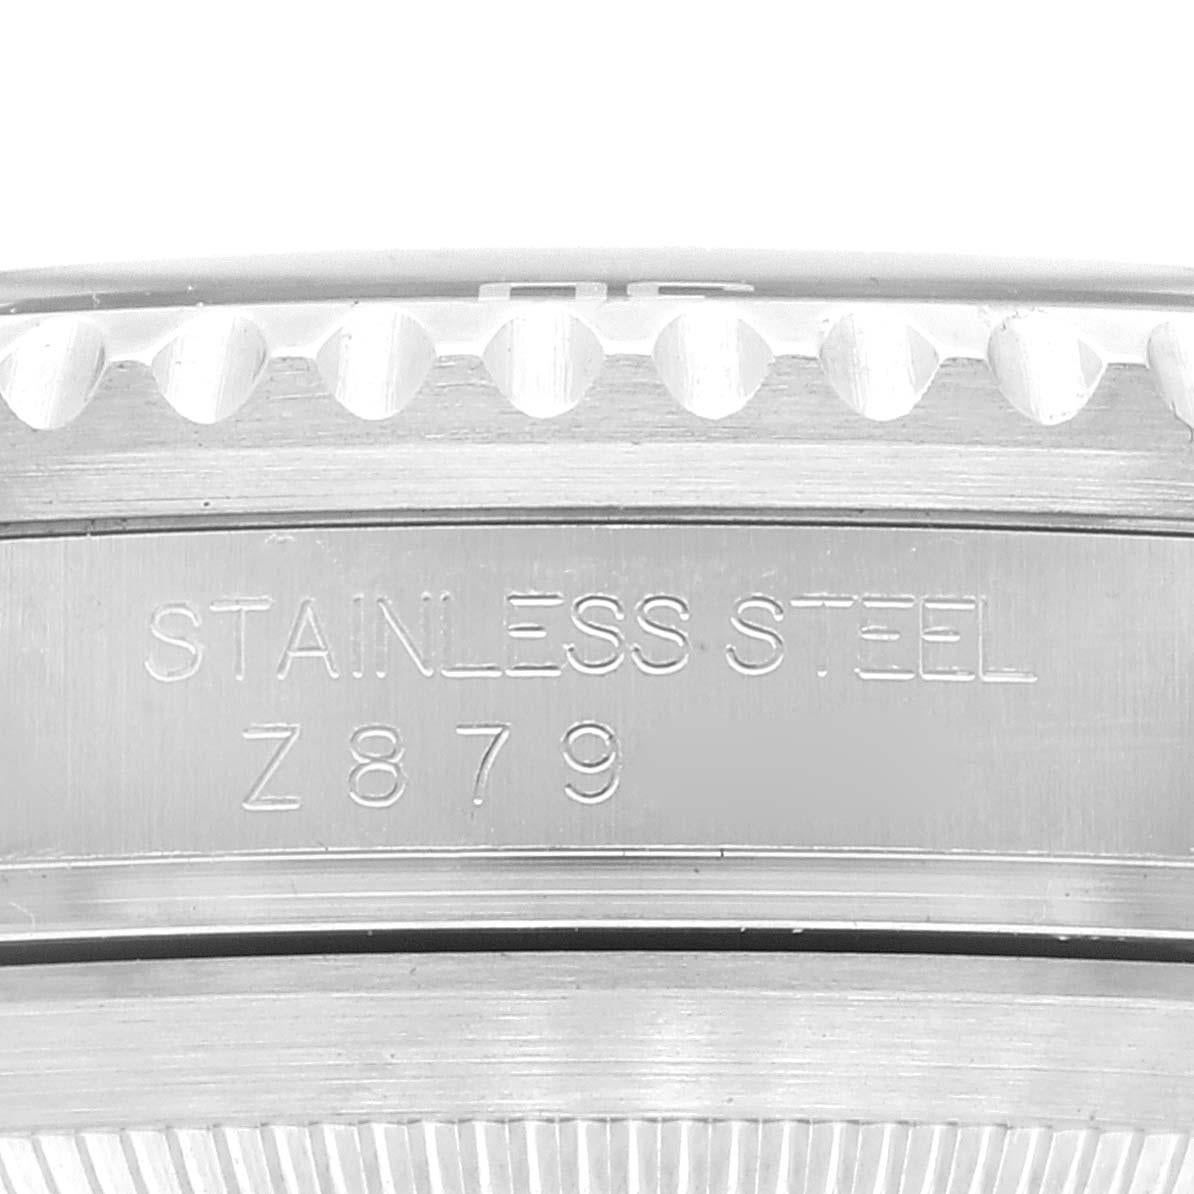 Rolex Submariner Date 40mm schwarzes Zifferblatt Stahl Herrenuhr 16610. Offiziell zertifiziertes Chronometerwerk mit automatischem Aufzug. Gehäuse aus Edelstahl mit einem Durchmesser von 40.0 mm. Rolex Logo auf der Krone. Spezielle einseitig